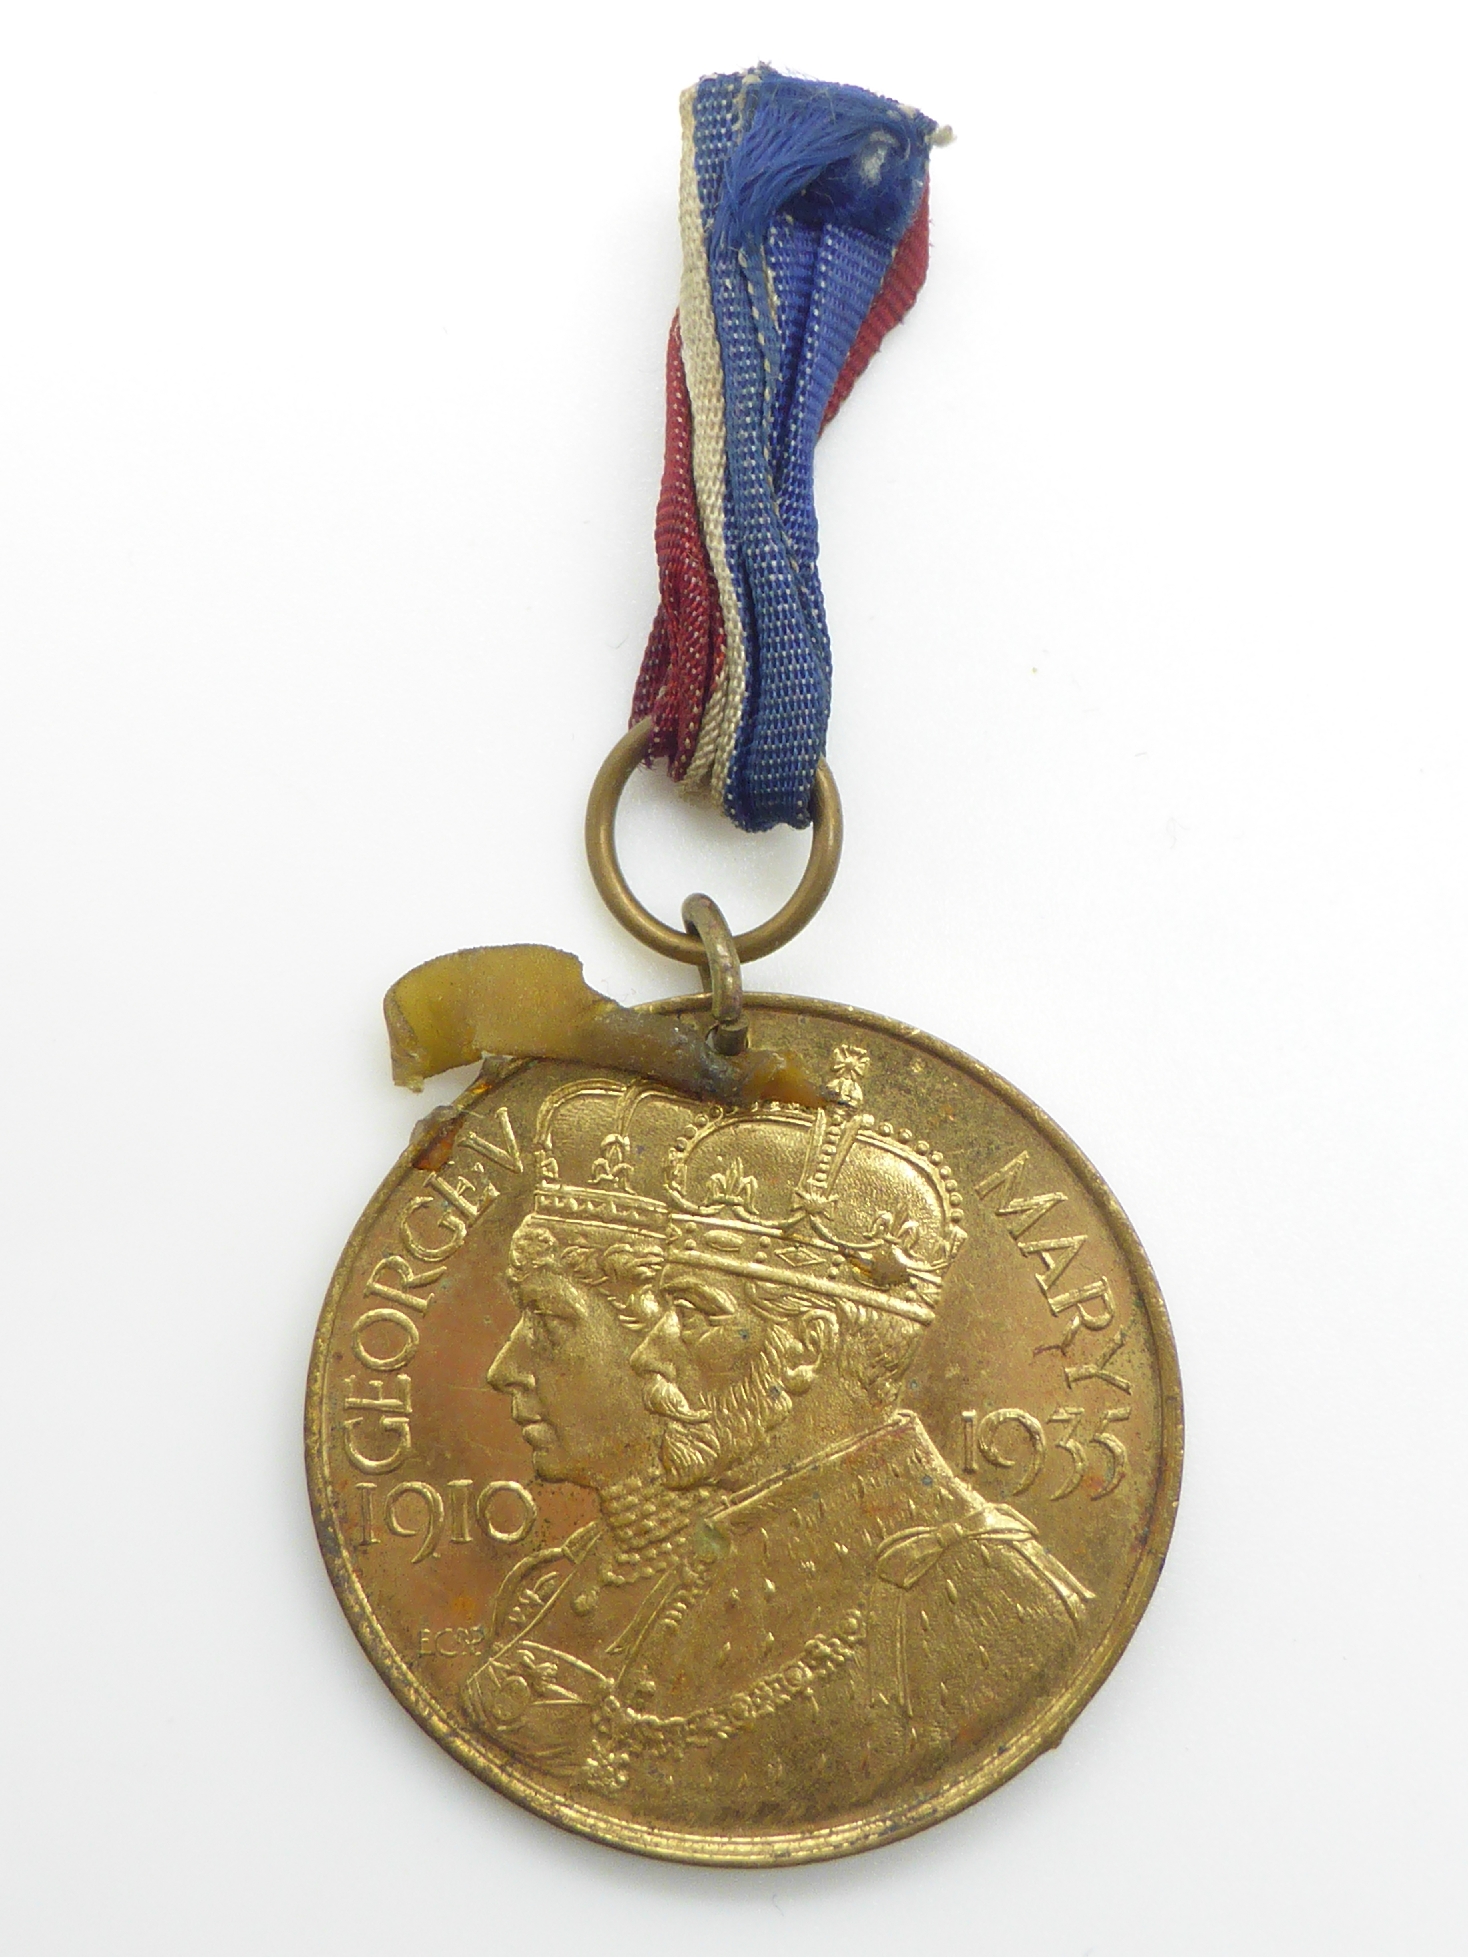 Elizabeth II Imperial Service Medal named to Mrs Jean Margaret Rose together with a WWII War Medal - Image 13 of 47